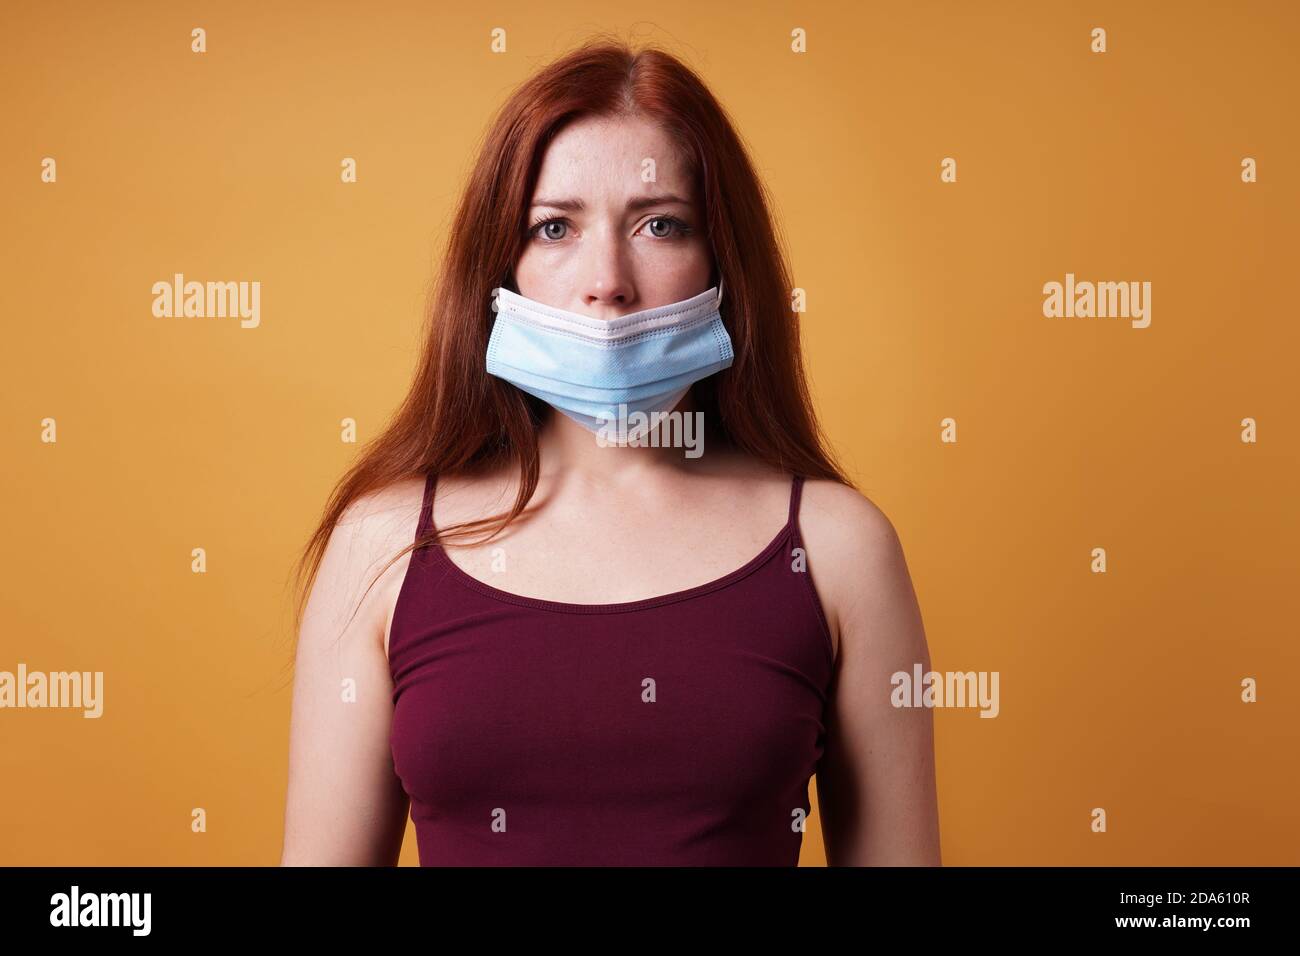 Junge Frau trägt medizinische Gesichtsmaske falsch verlassen Nase aufgedeckt - unsachgemäße Verwendung der schützenden Corona coronavirus covid Maske Stockfoto